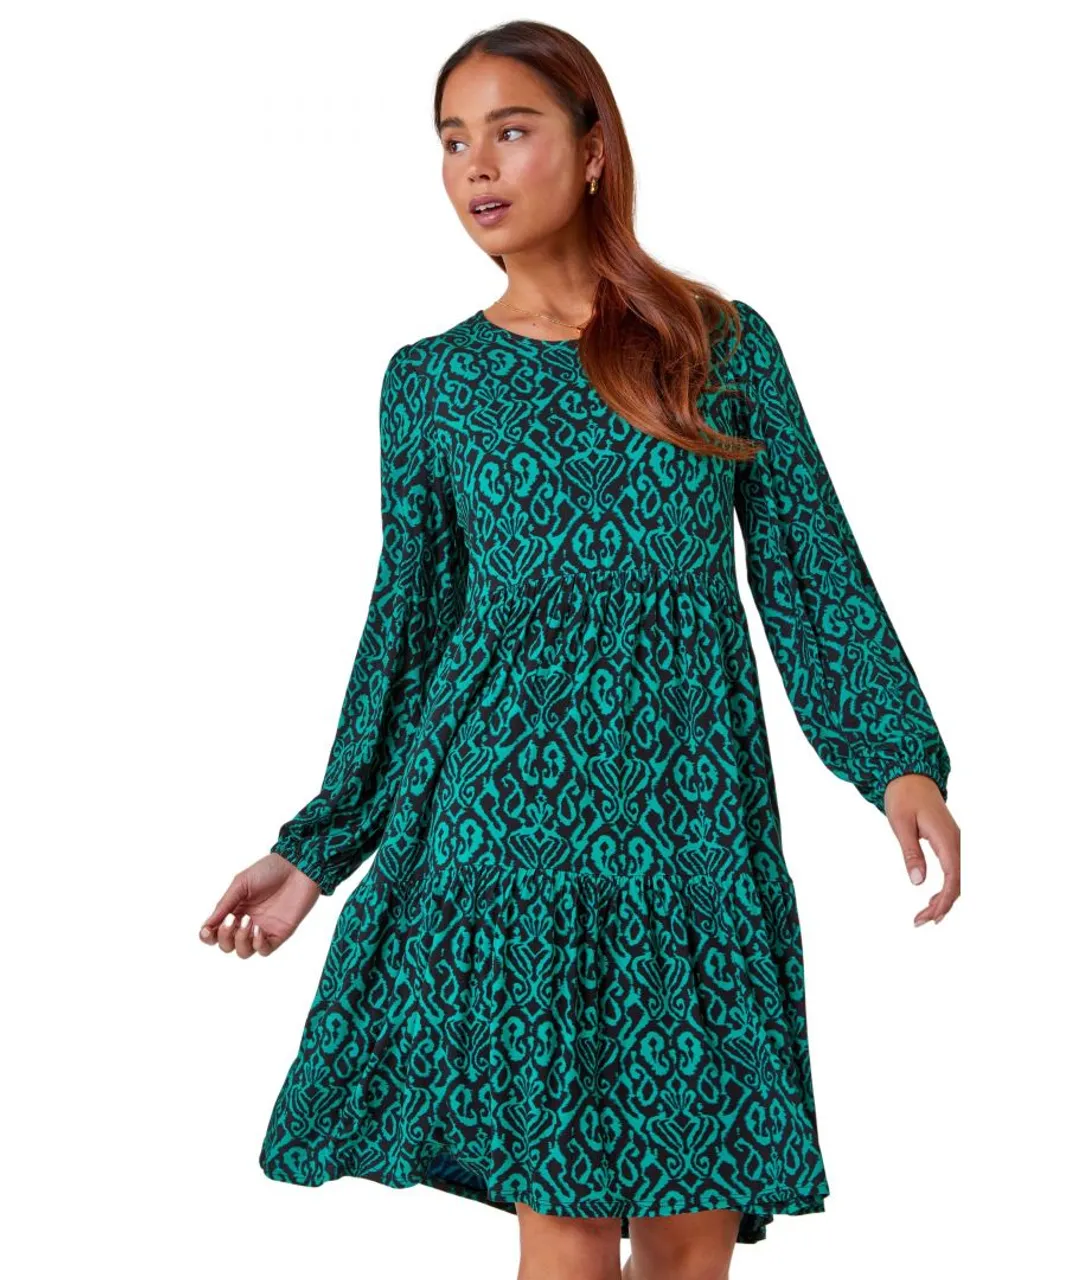 Roman Petite Womens Aztec Print Tiered Stretch Dress - Green